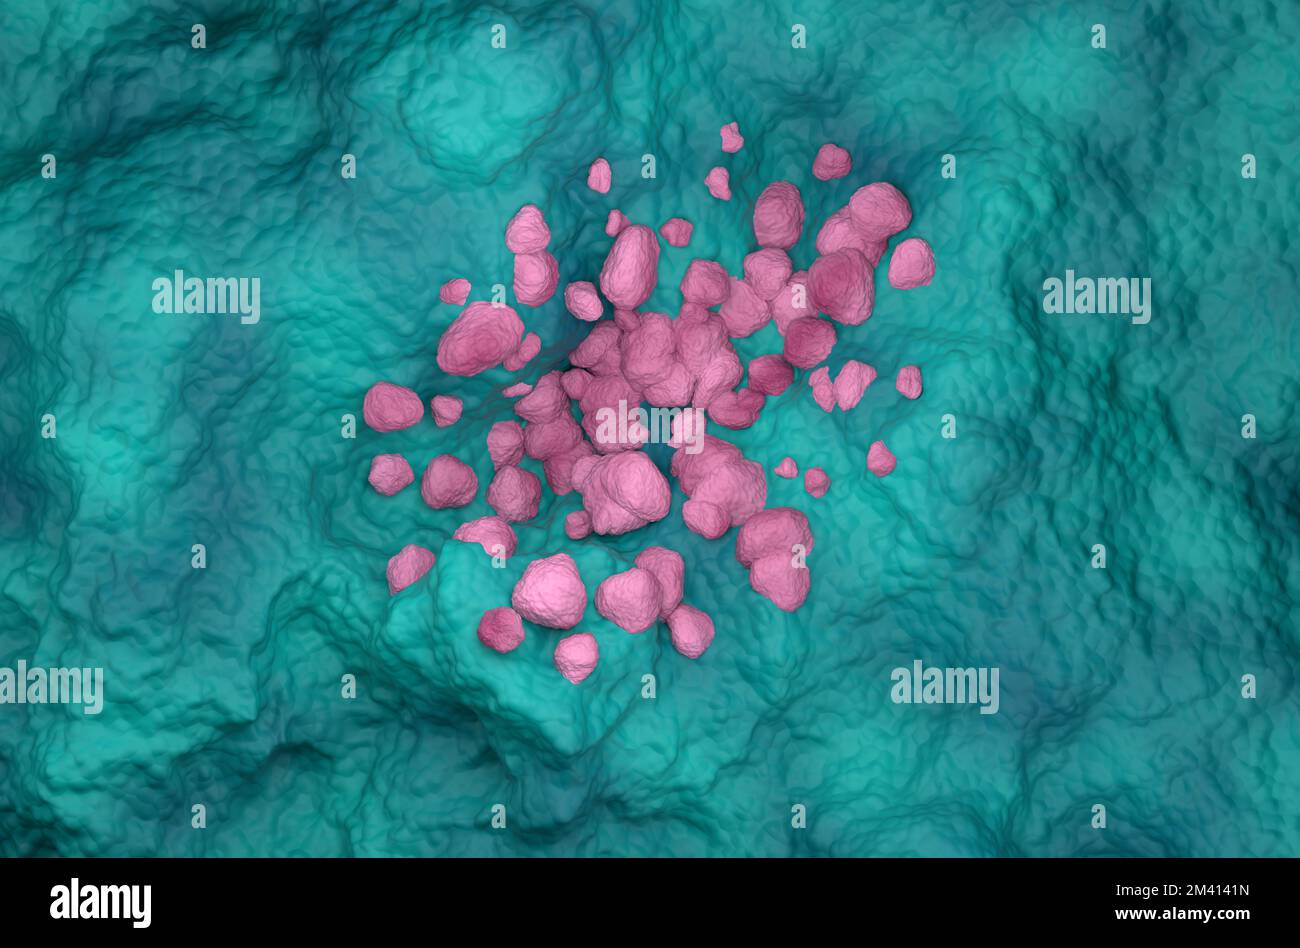 Nicht-kleinzelliges Lungenkarzinom (NSCLC) im Lungengewebe – Draufsicht 3D Abbildung Stockfoto